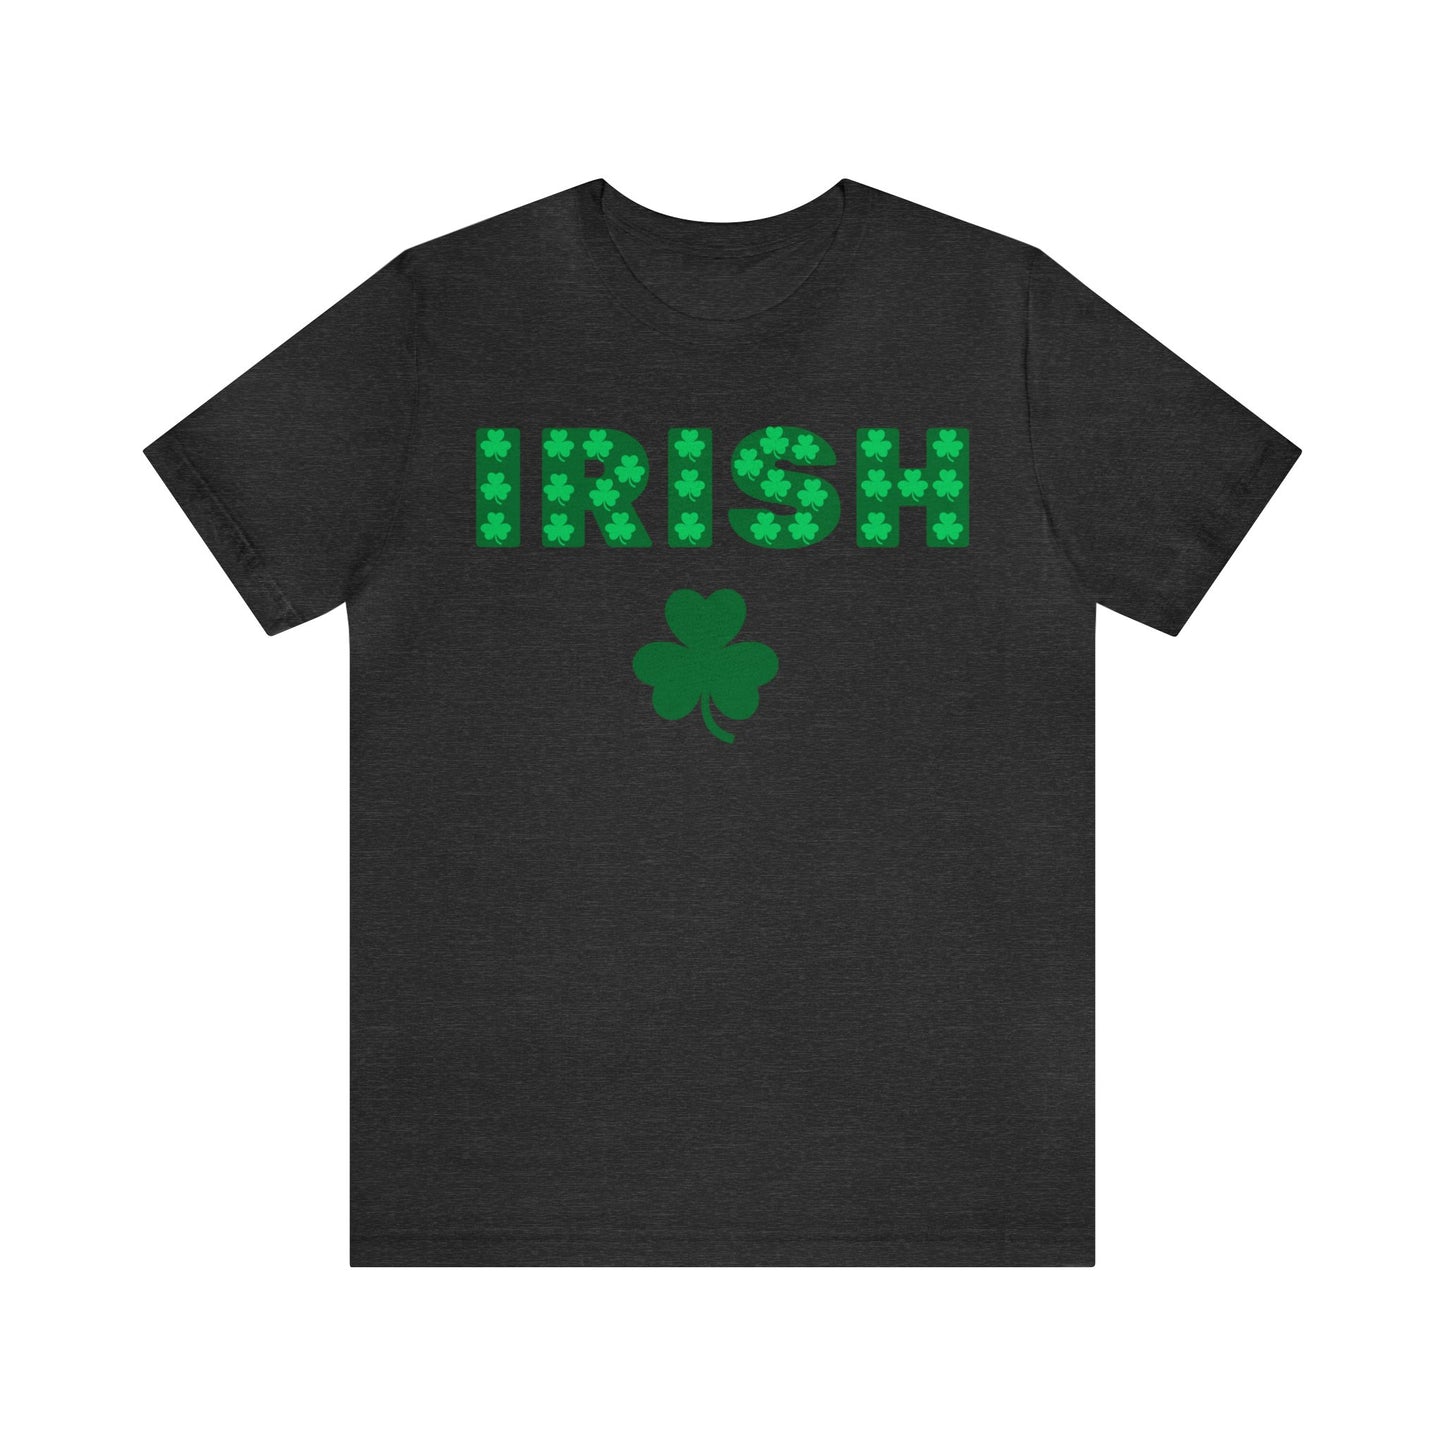 Irish shirt Feeling Lucky Shirt Clover Shirt St Patrick's Day shirt